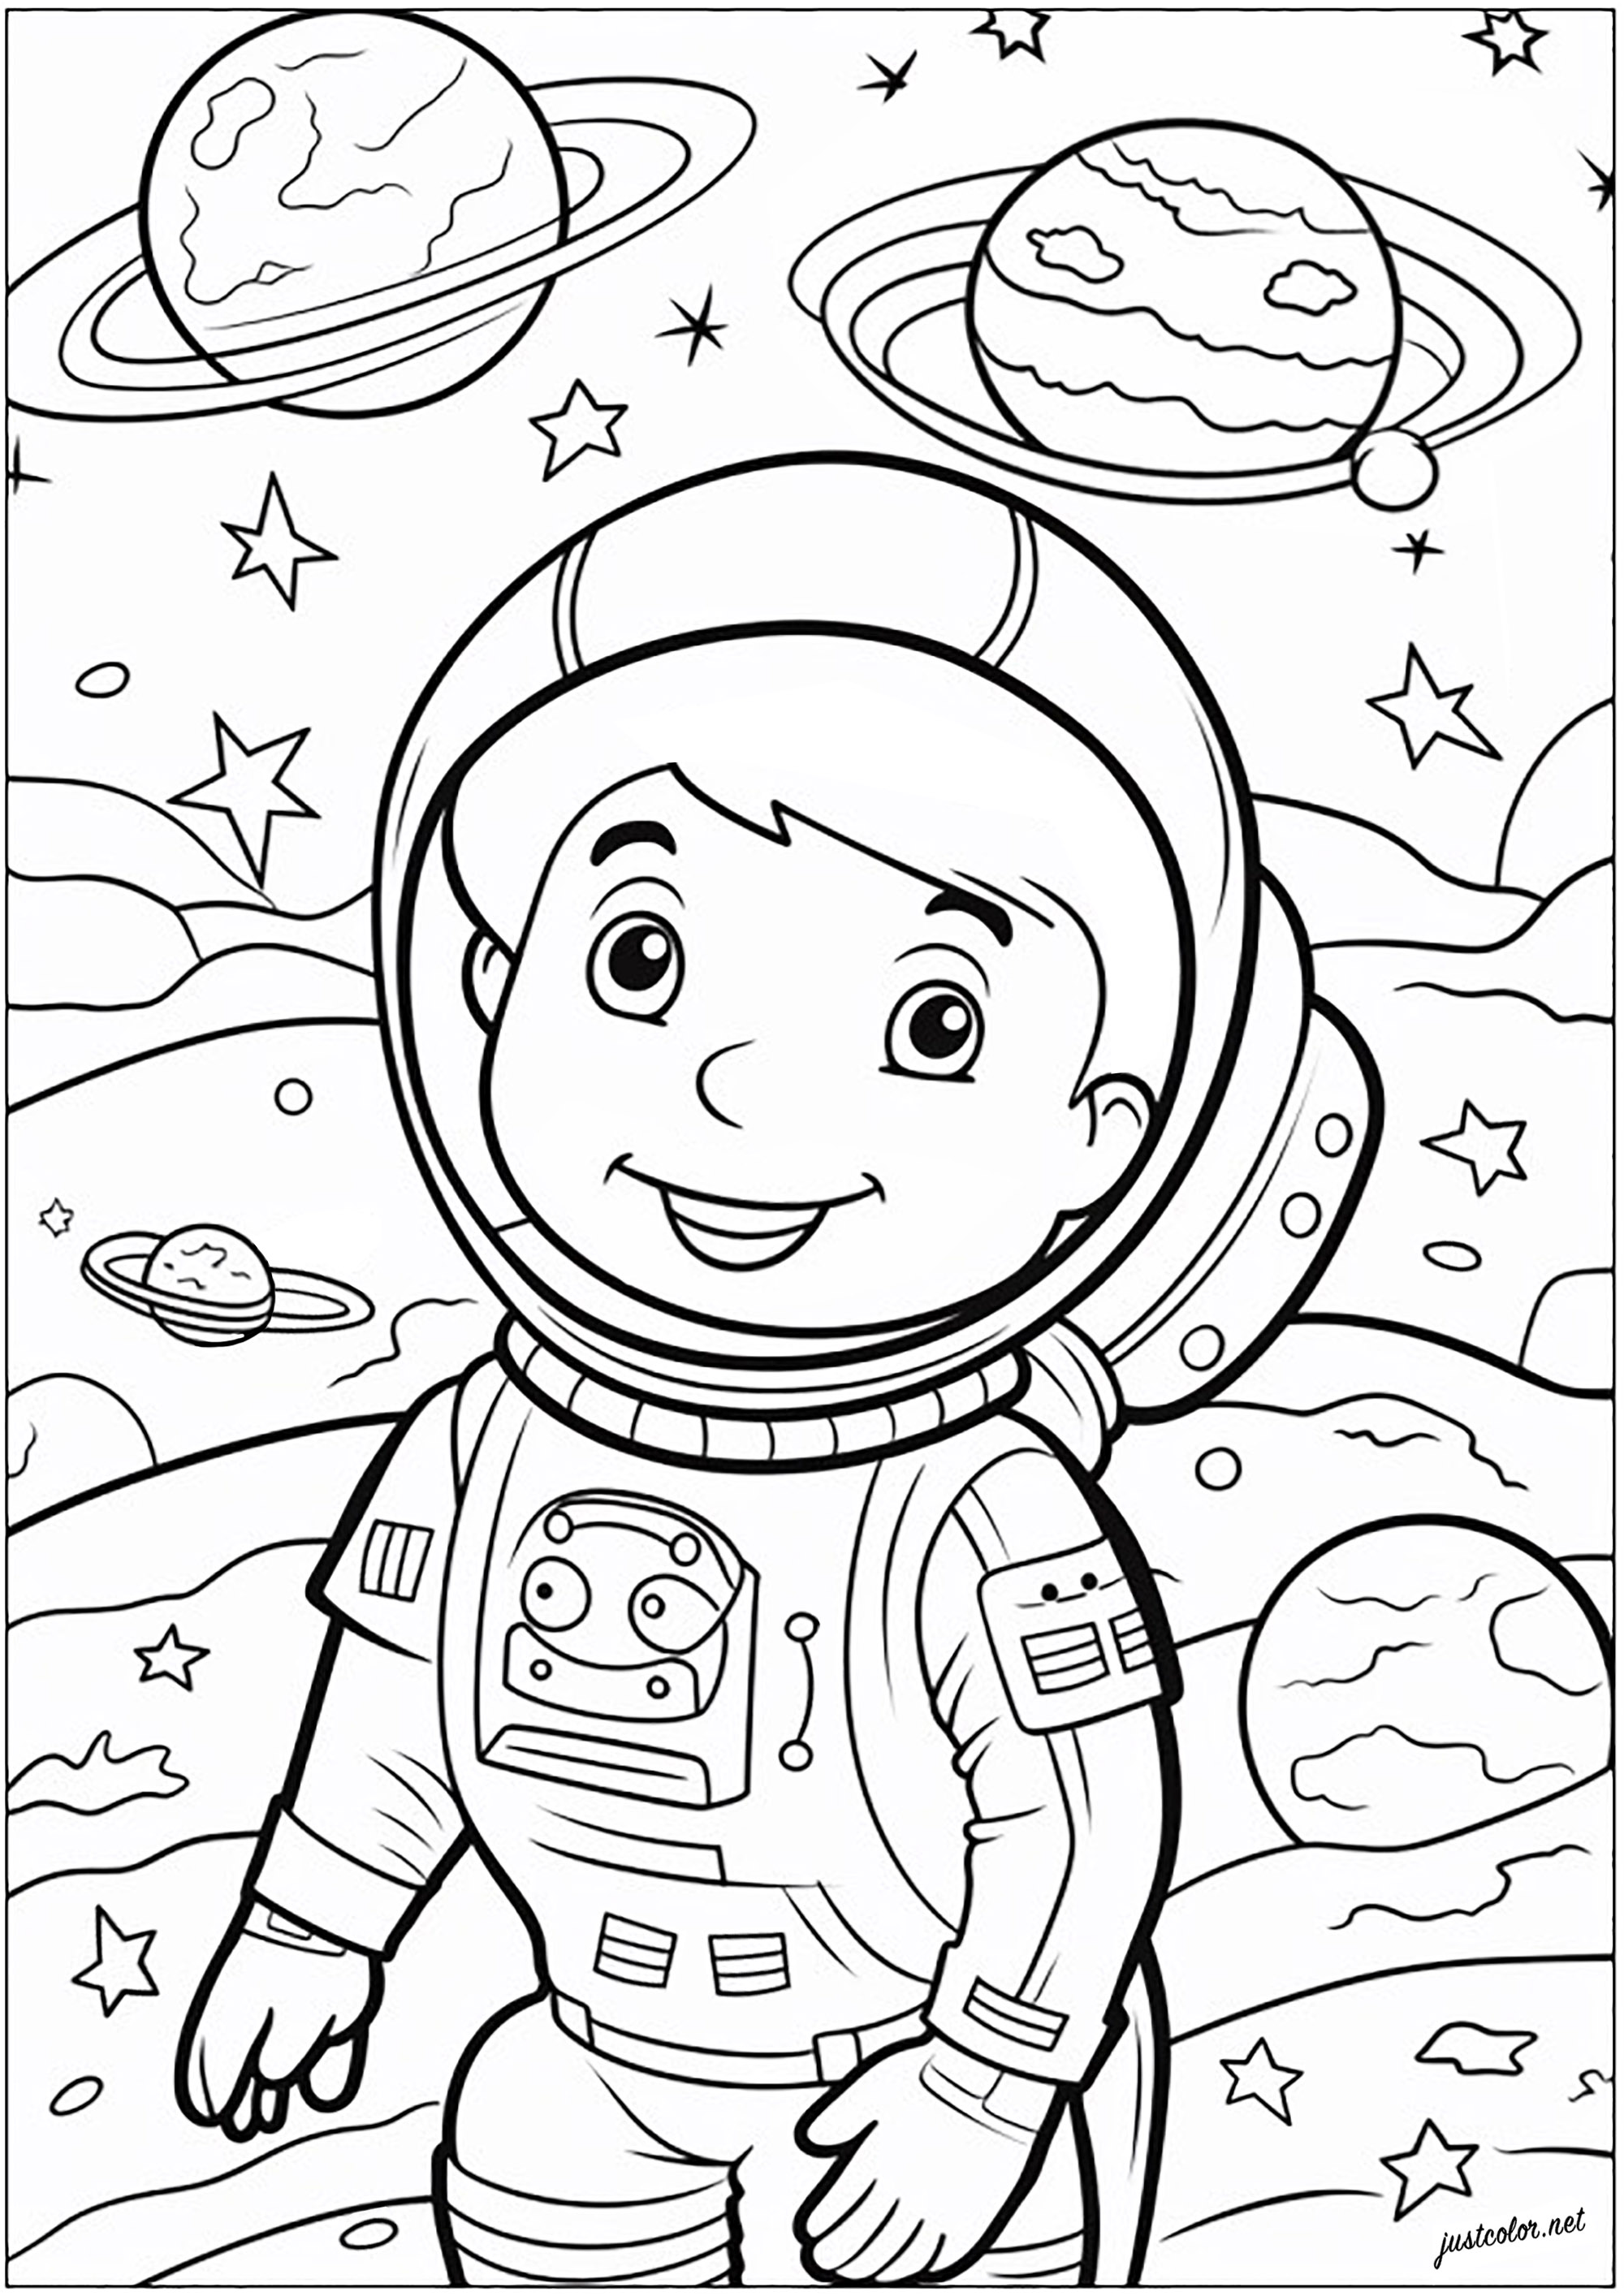 Colorear un pequeño astronauta. Joven astronauta en el espacio, flotando entre estrellas y planetas